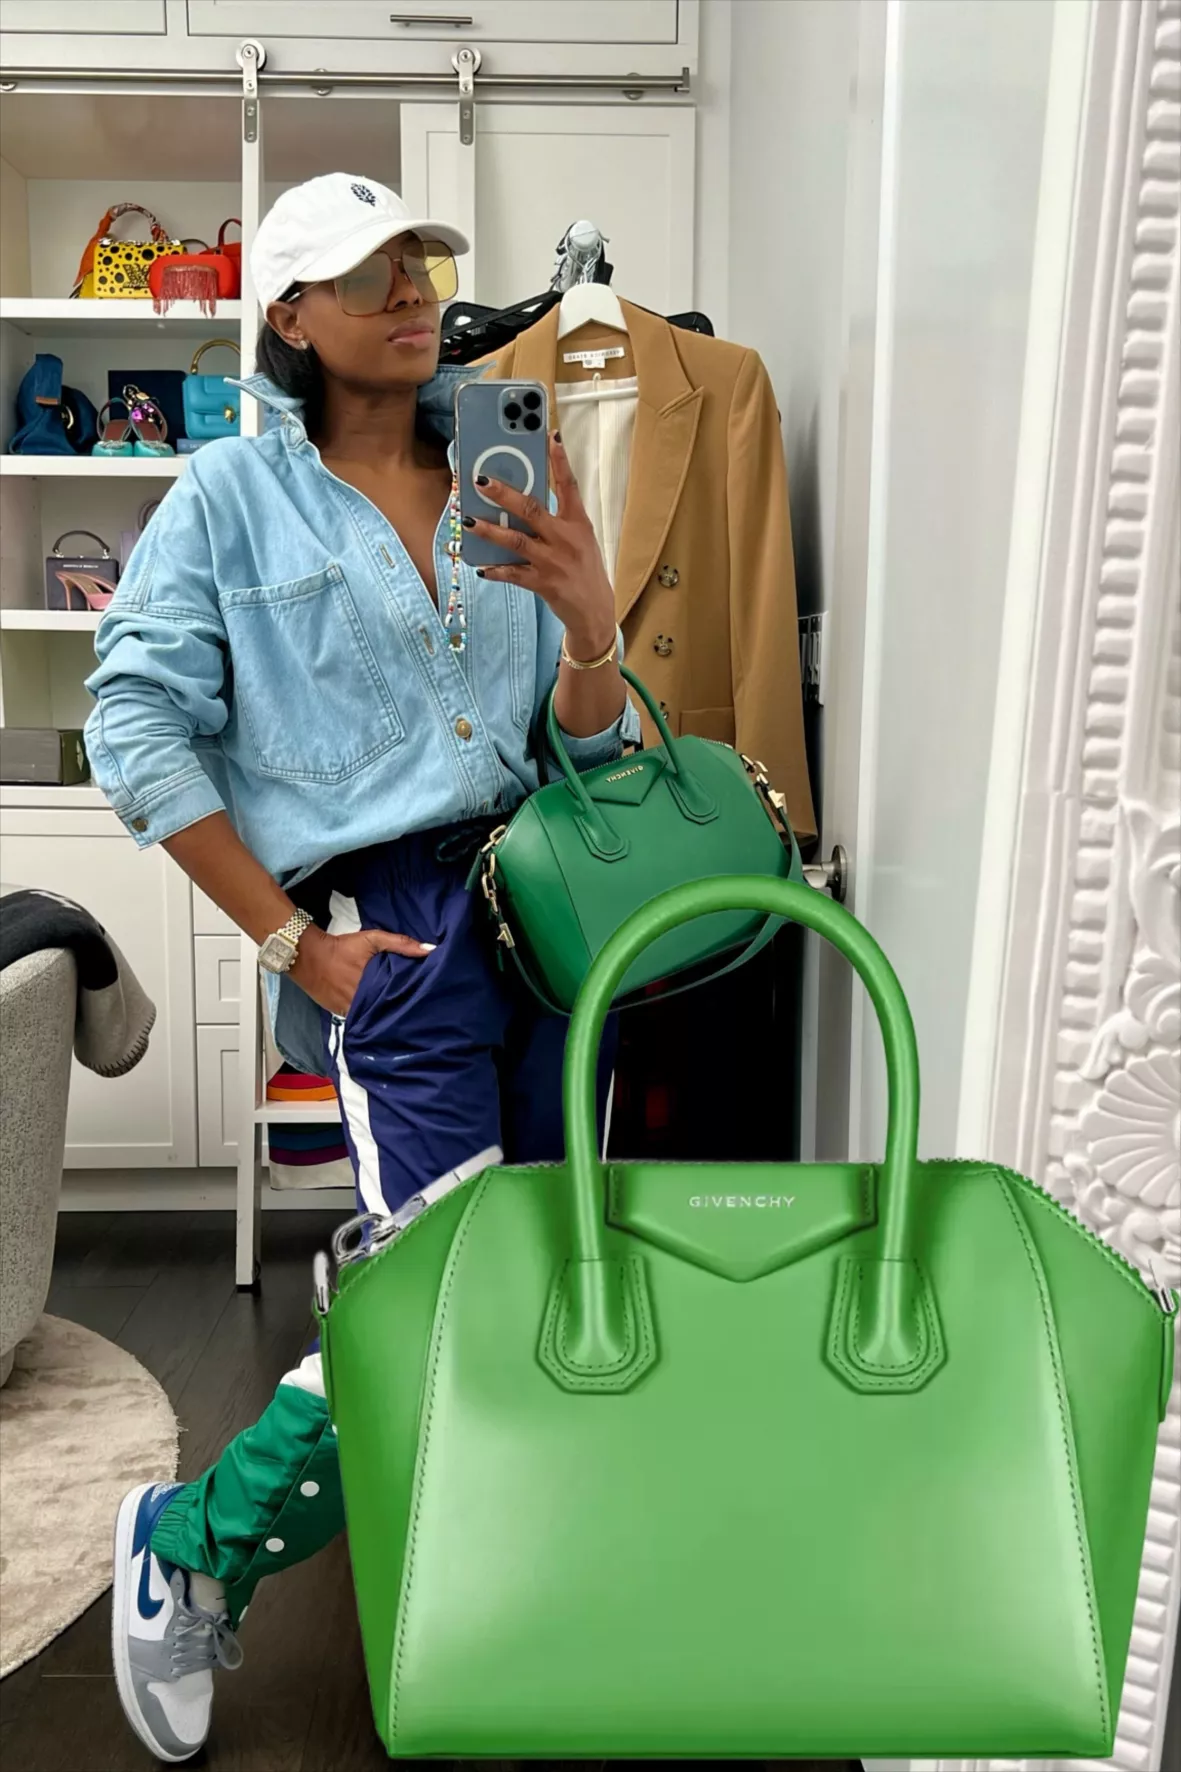 Givenchy Mini Antigona Top Handle Bag in Green